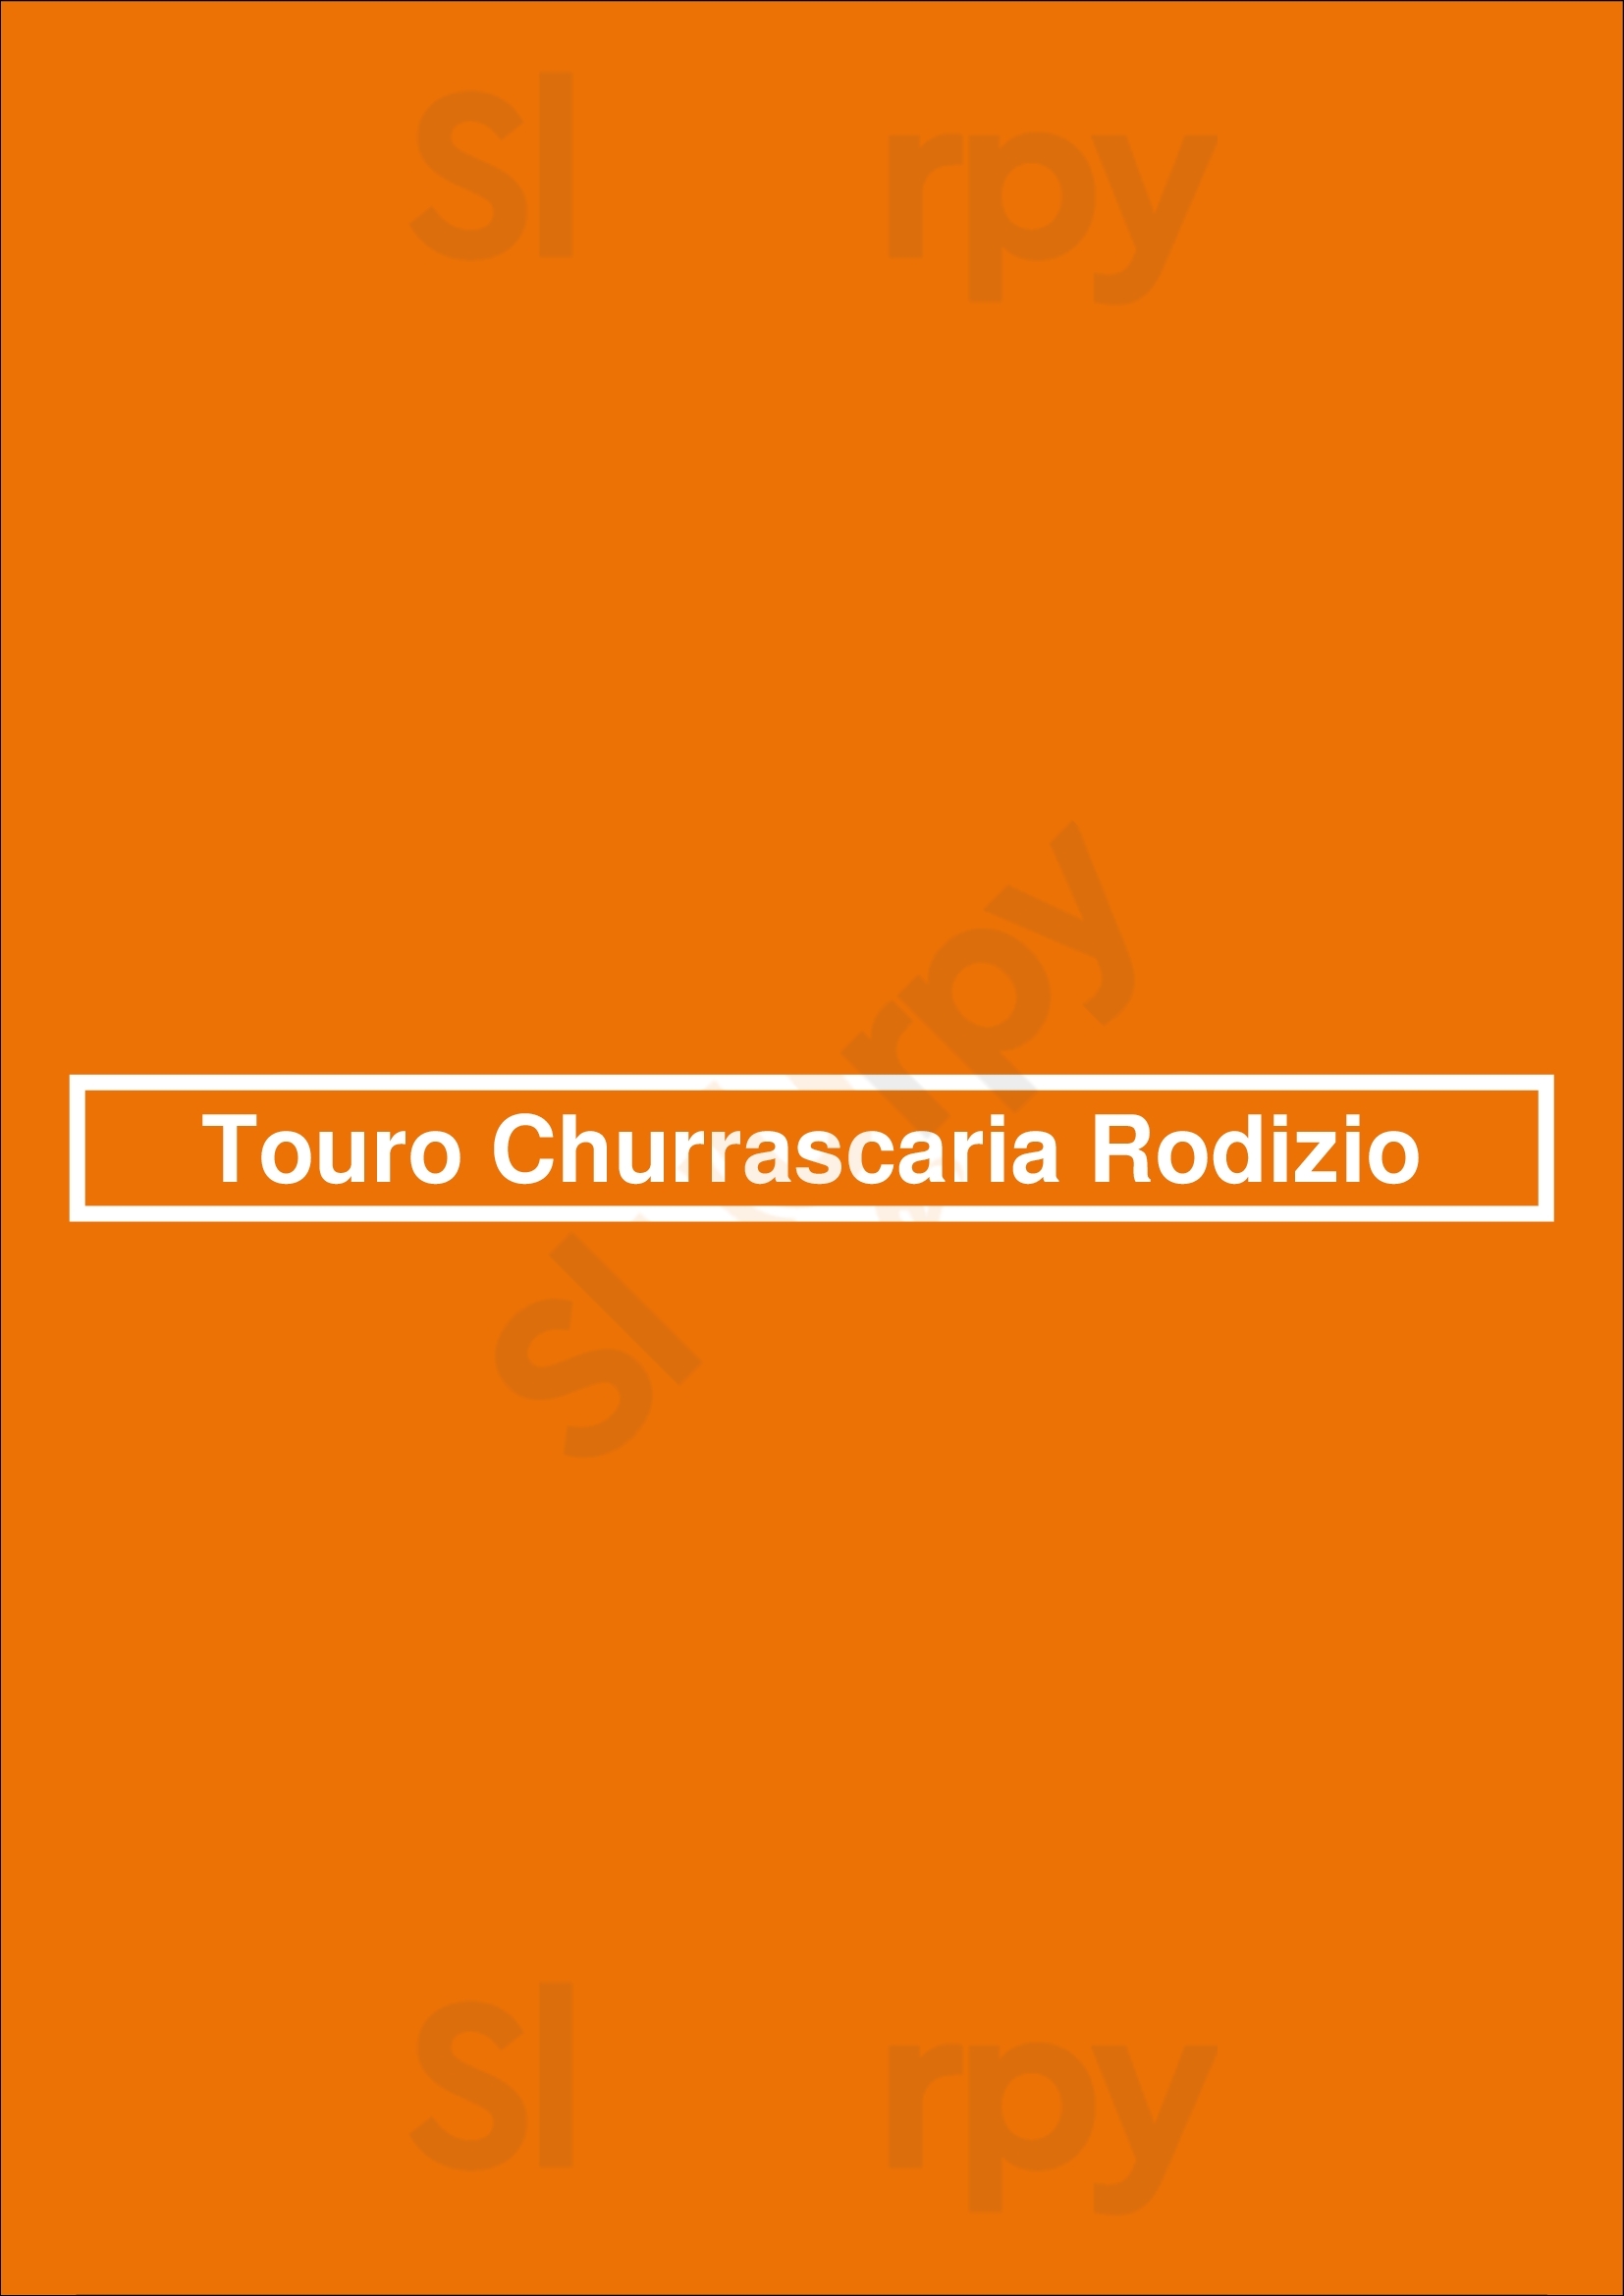 Touro Churrascaria Rodizio Braga Menu - 1